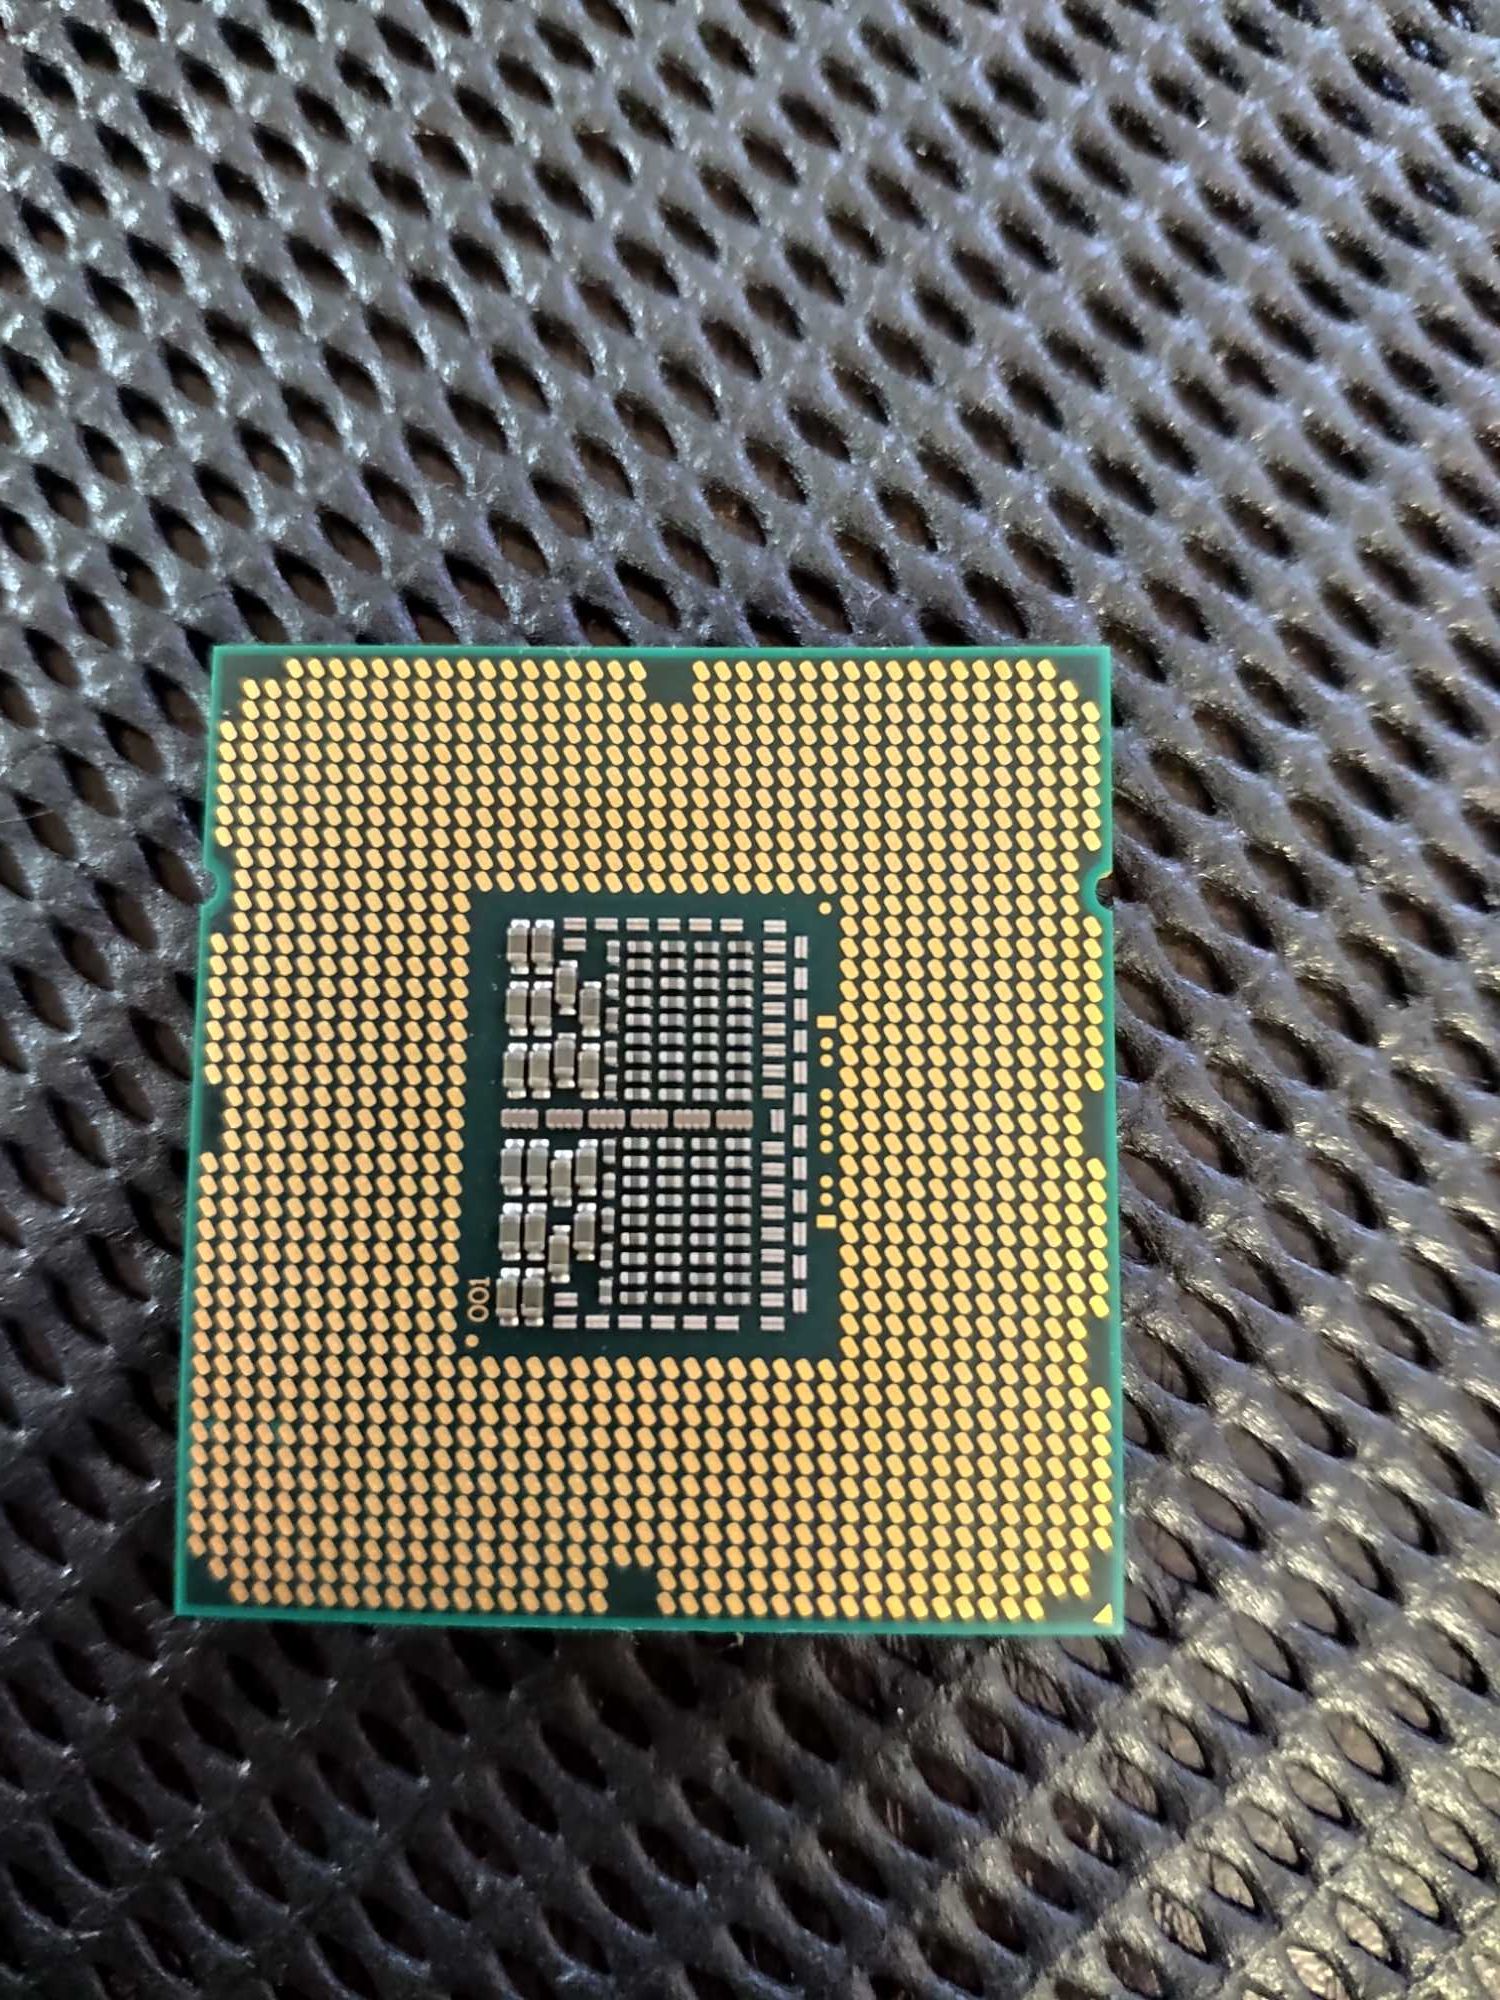 Процессор Intel Core I7-930 s1366